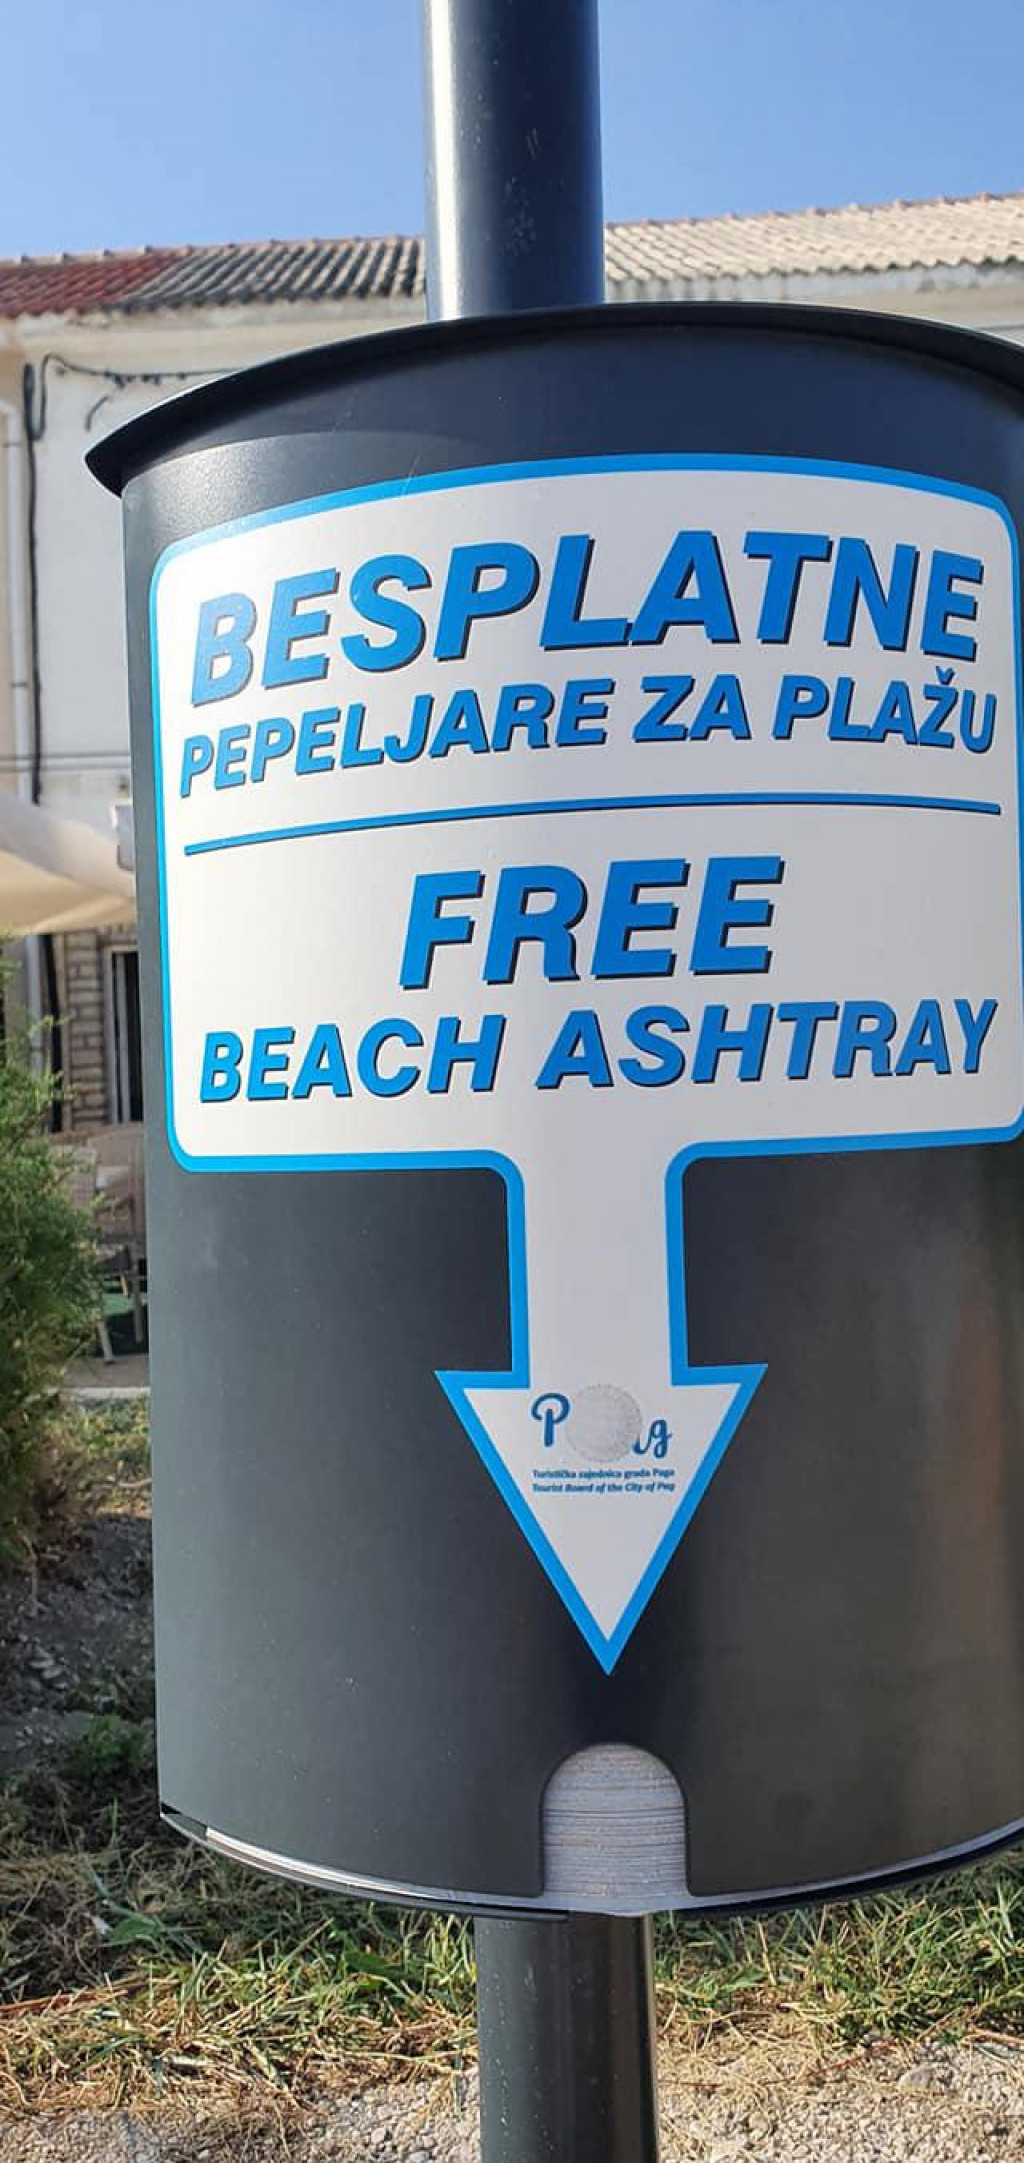 Postavljene besplatne pepeljare na gradskoj plaži Prosika u Pagu